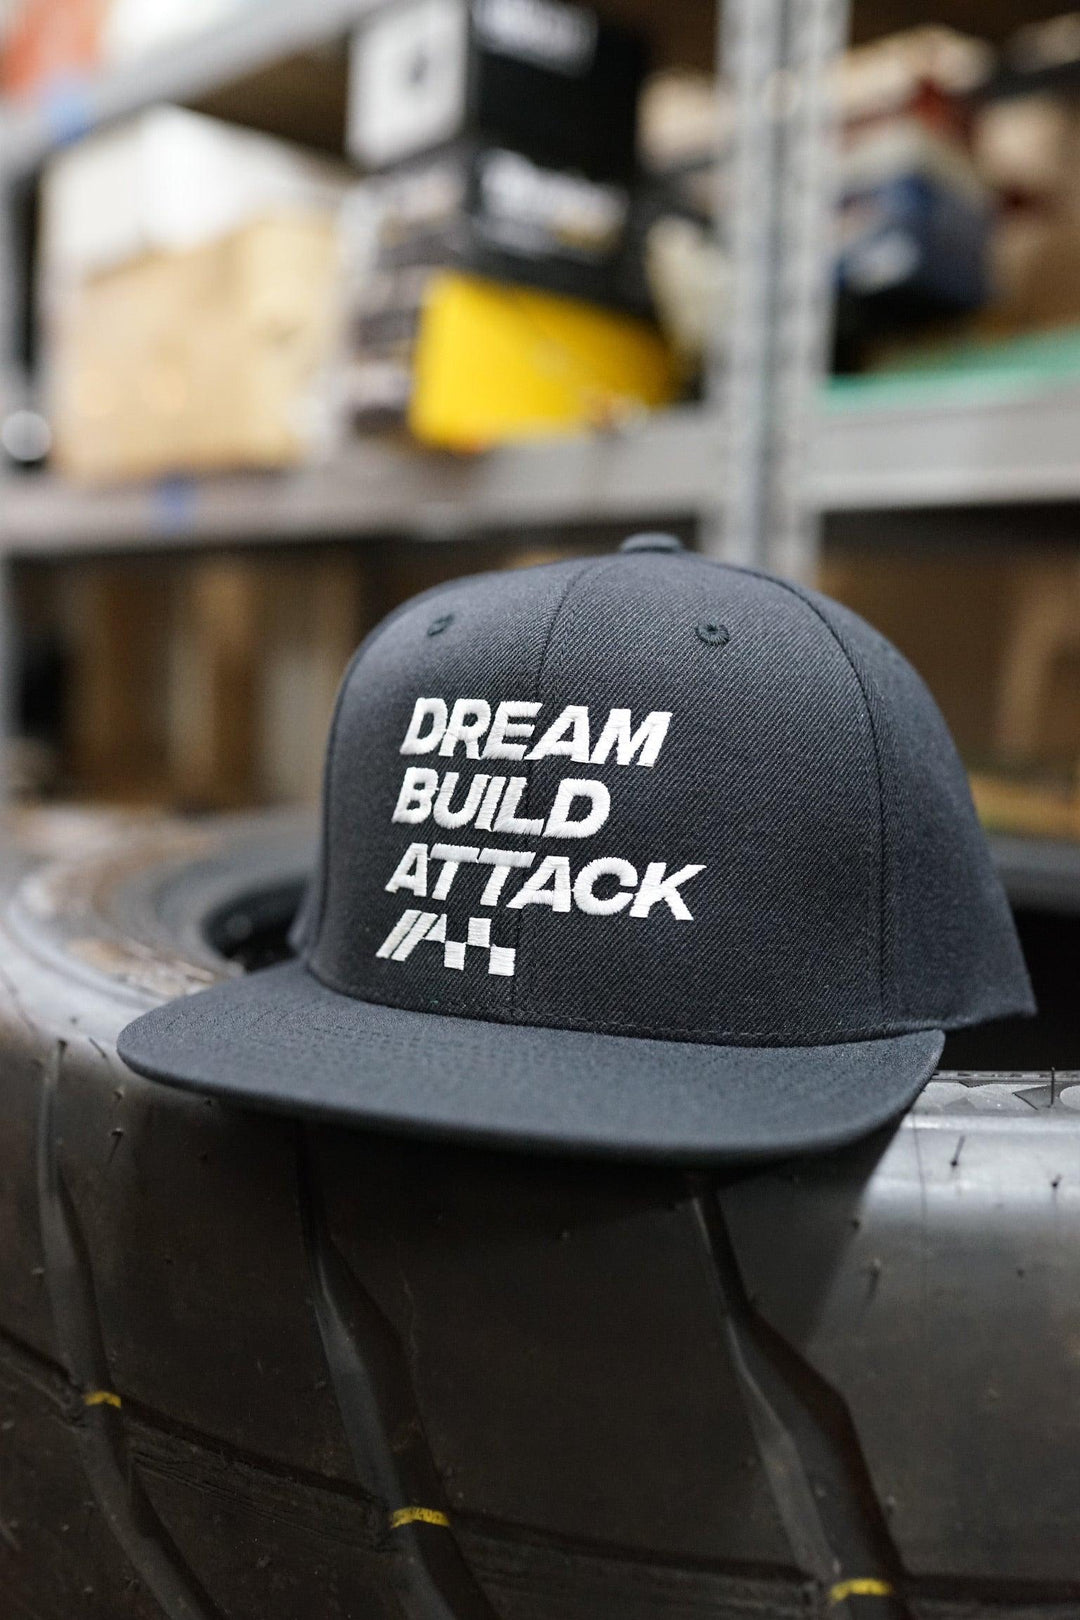 Dream Build Attack Premium Snapback Cap - Attacking the Clock Racing